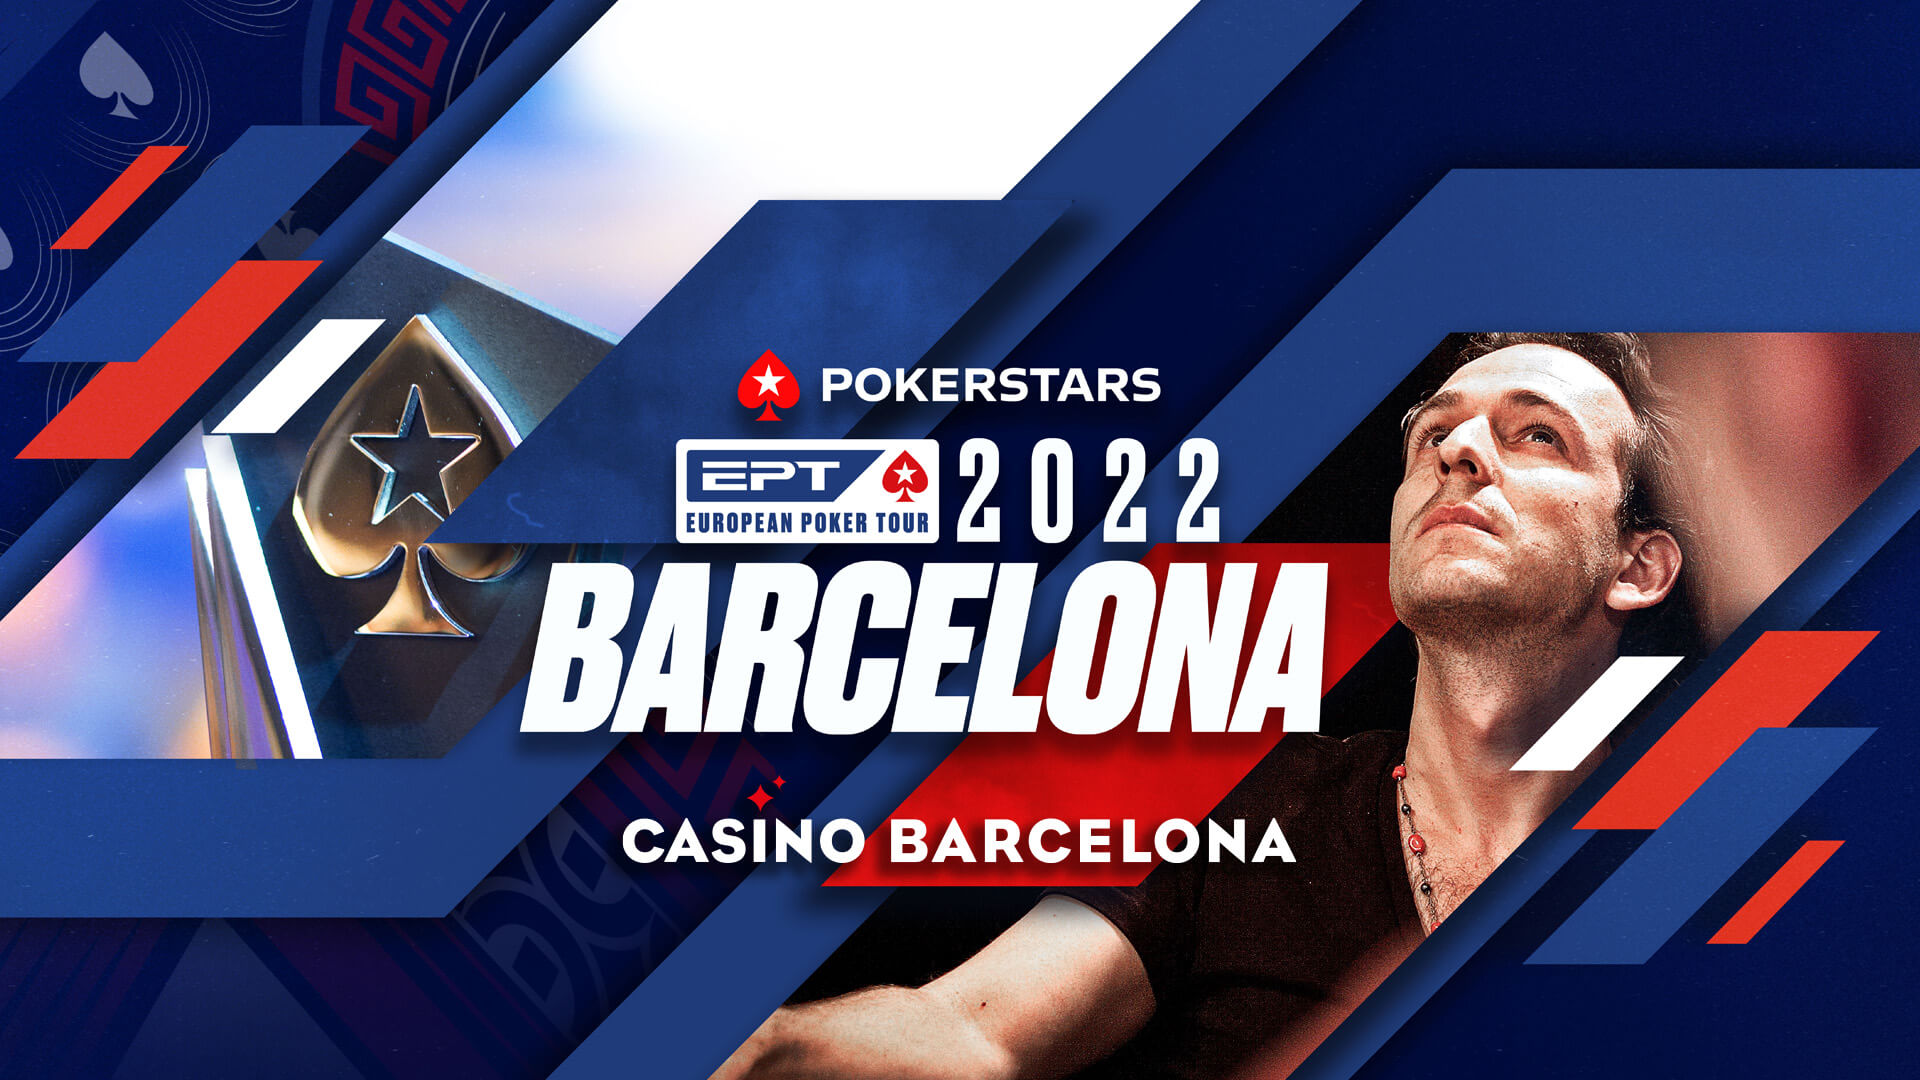 El European Poker Tour vuelve a Casino Barcelona